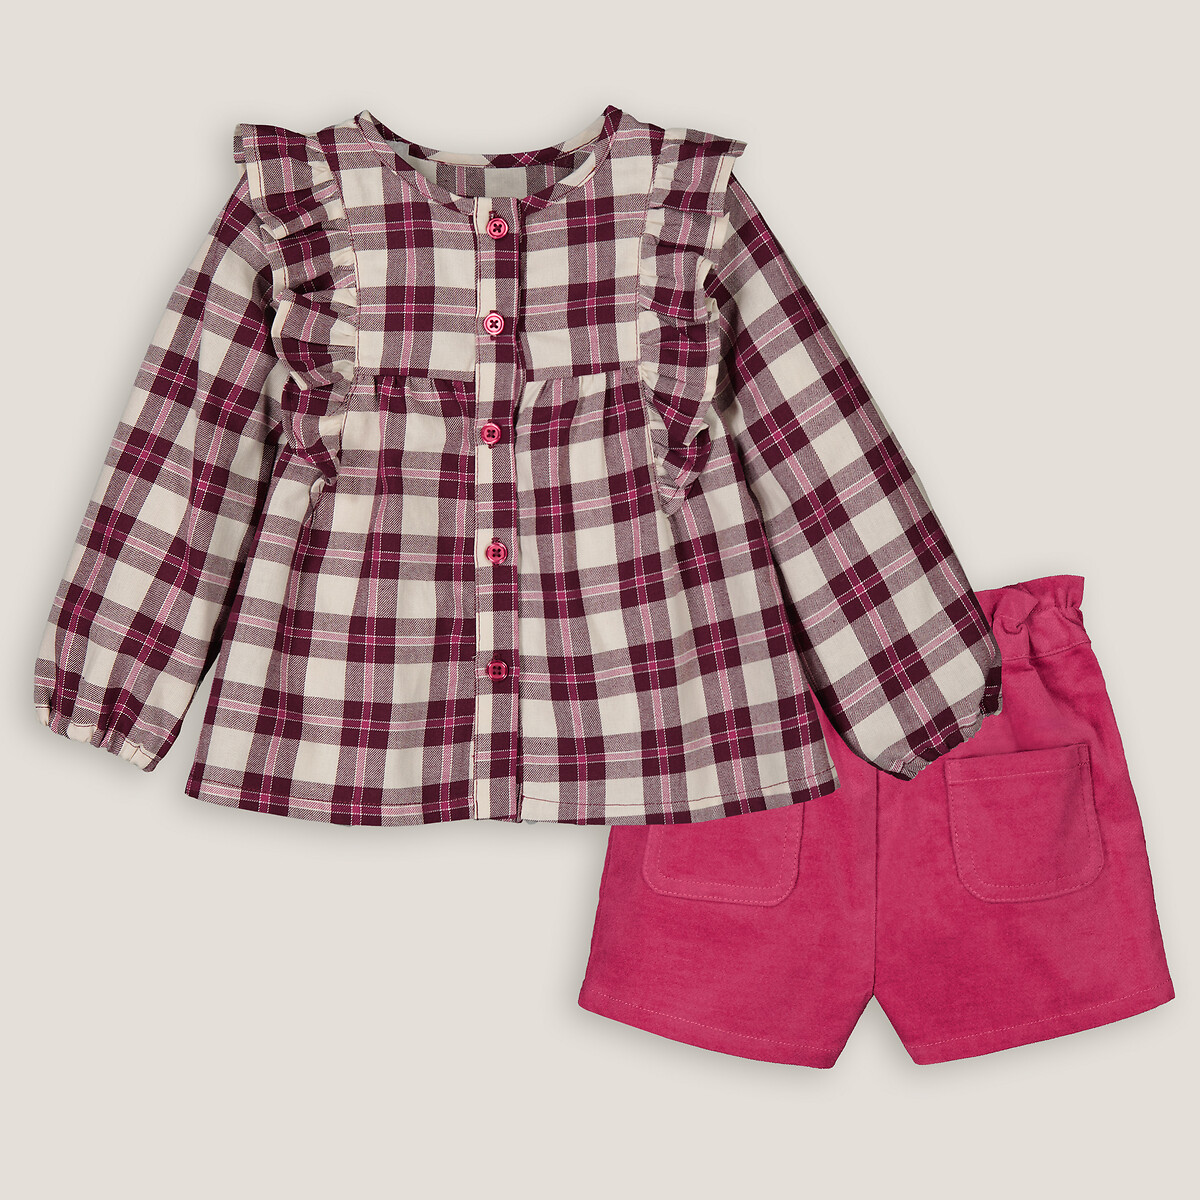 Комплект из двух вещей блузка и шорты 5 лет - 108 см розовый комплект из двух вещей блузки и шаровар 5 лет 108 см бежевый